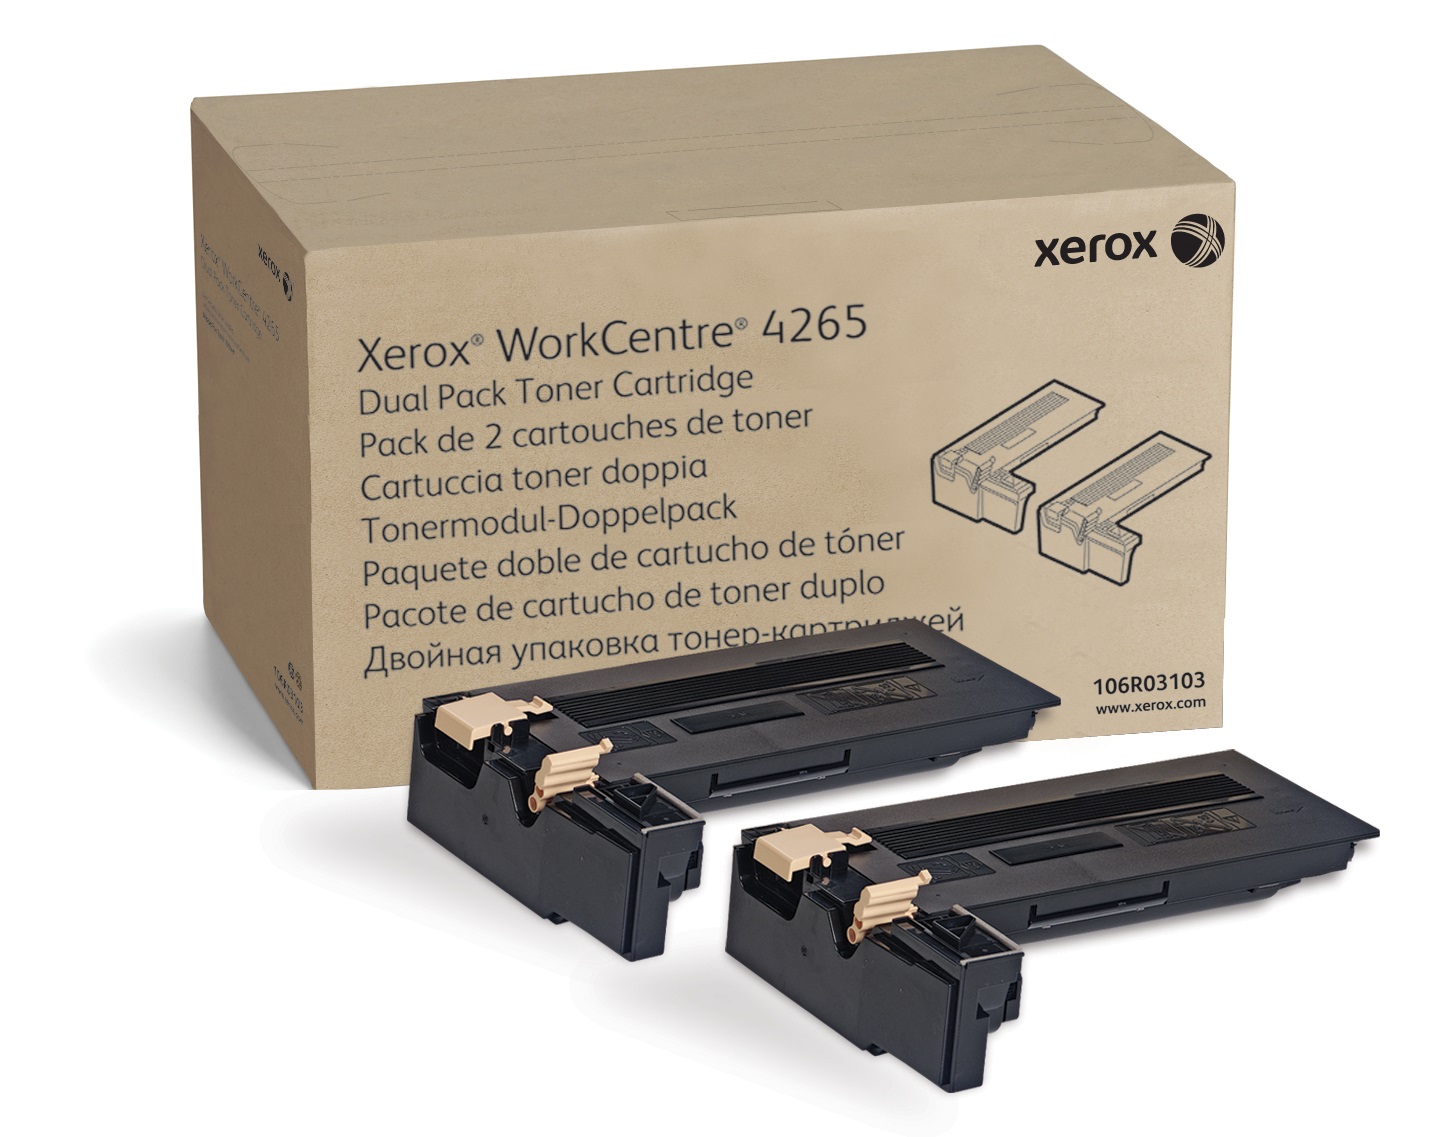 Toner, DMO Sold, Dual Pack, XEROX 106R03103